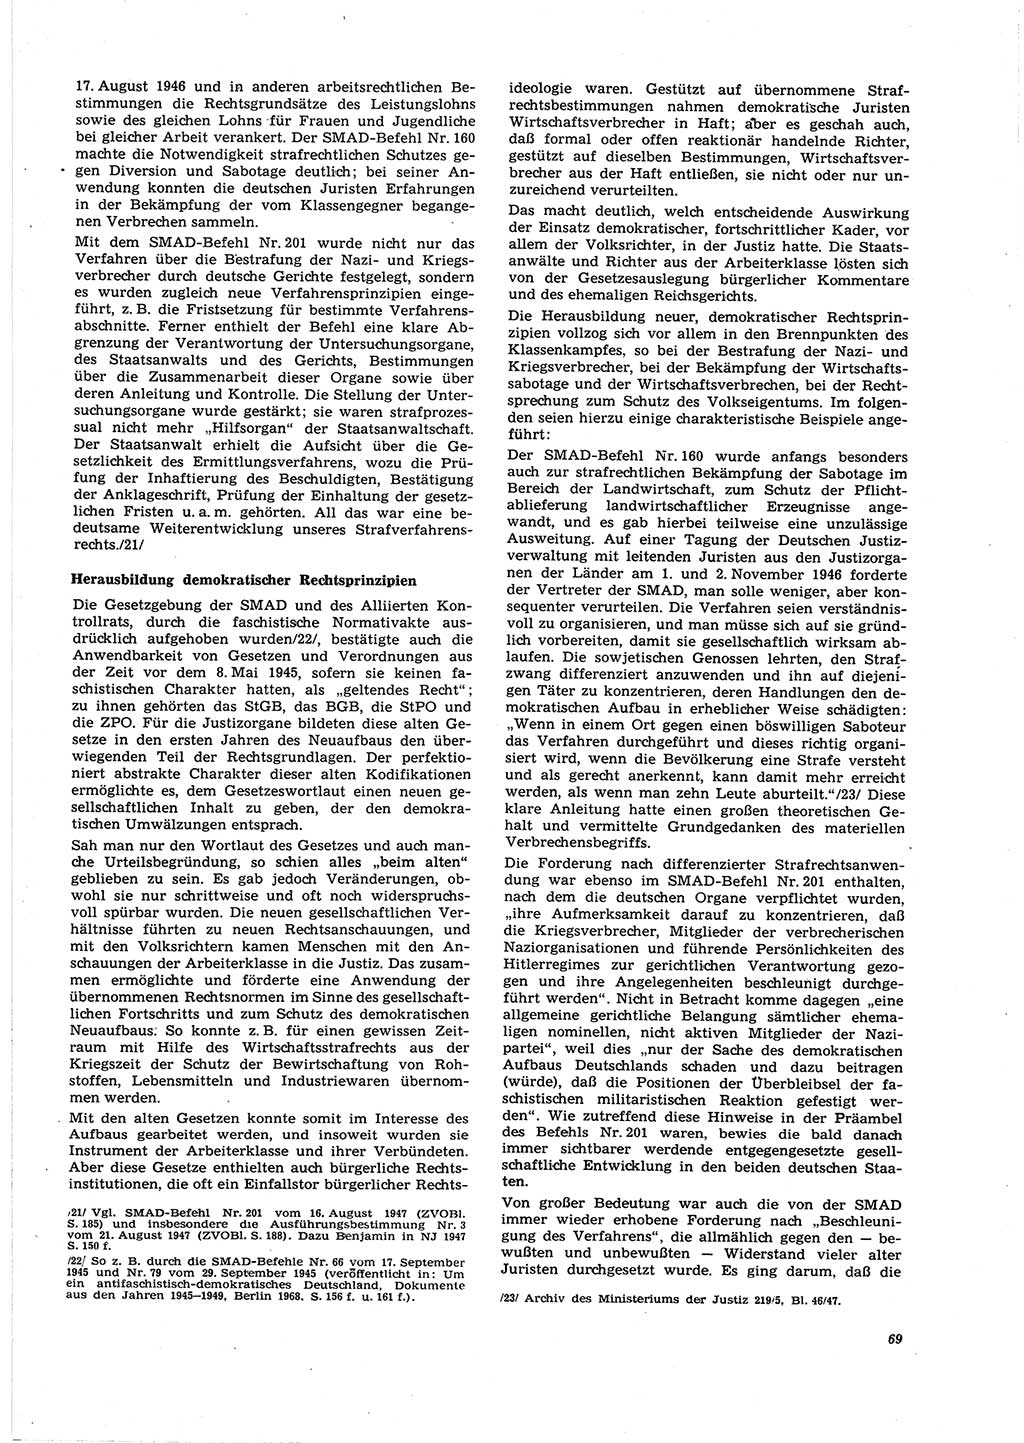 Neue Justiz (NJ), Zeitschrift für Recht und Rechtswissenschaft [Deutsche Demokratische Republik (DDR)], 27. Jahrgang 1973, Seite 69 (NJ DDR 1973, S. 69)